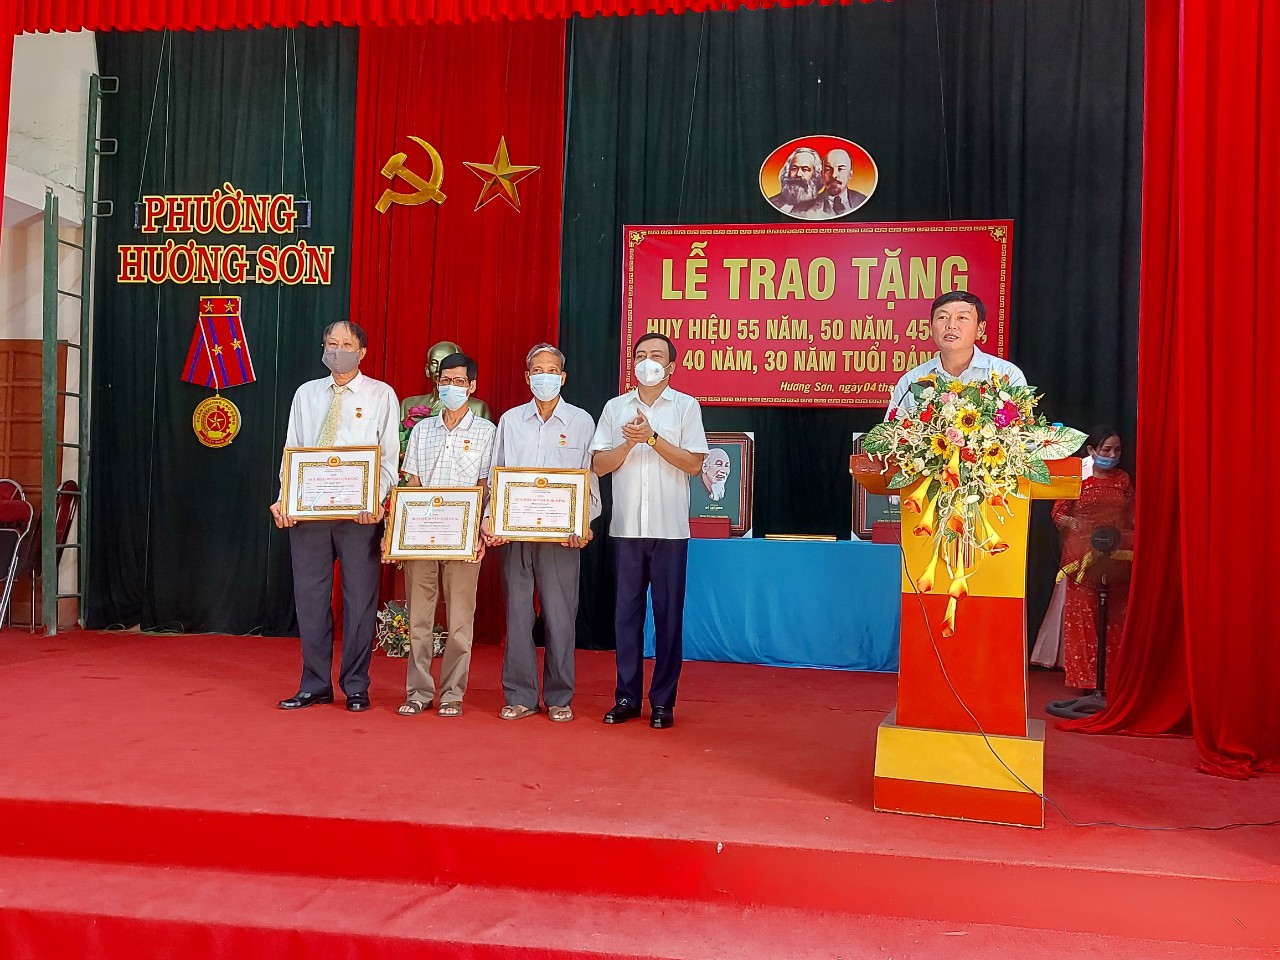 Đồng chí Ngô Thủy, Ủy viên BTV, Trưởng ban tổ chức Thành ủy Thái Nguyên trao tặng Huy hiệu Đảng cho các Đảng viên